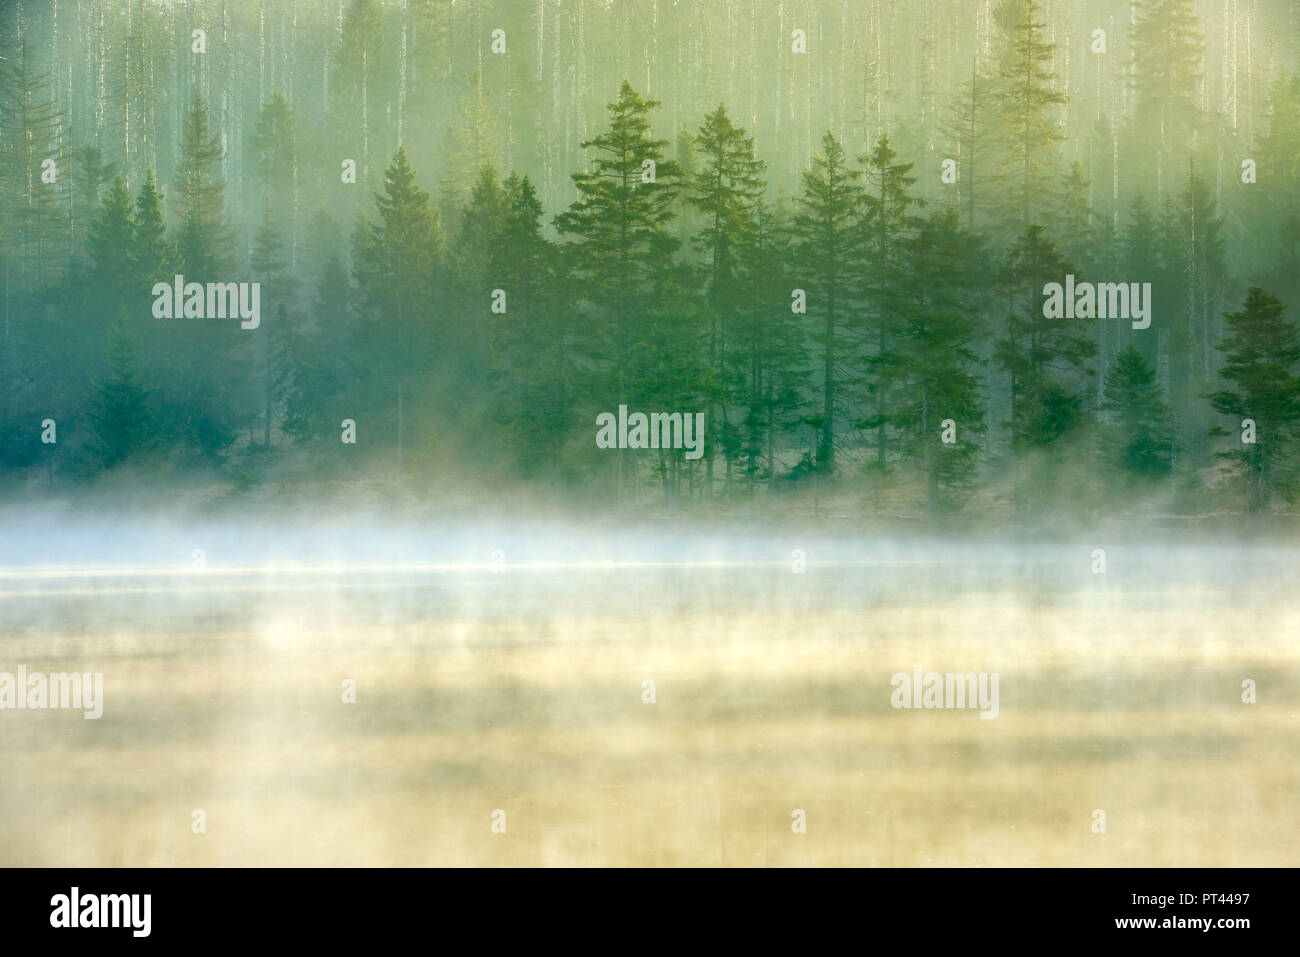 Sonnenaufgang an der Oder Teich mit Nebel, Wald, teils durch Befall von borkenkäfer tot Fichte, Nationalpark Harz, Niedersachsen, Deutschland Stockfoto